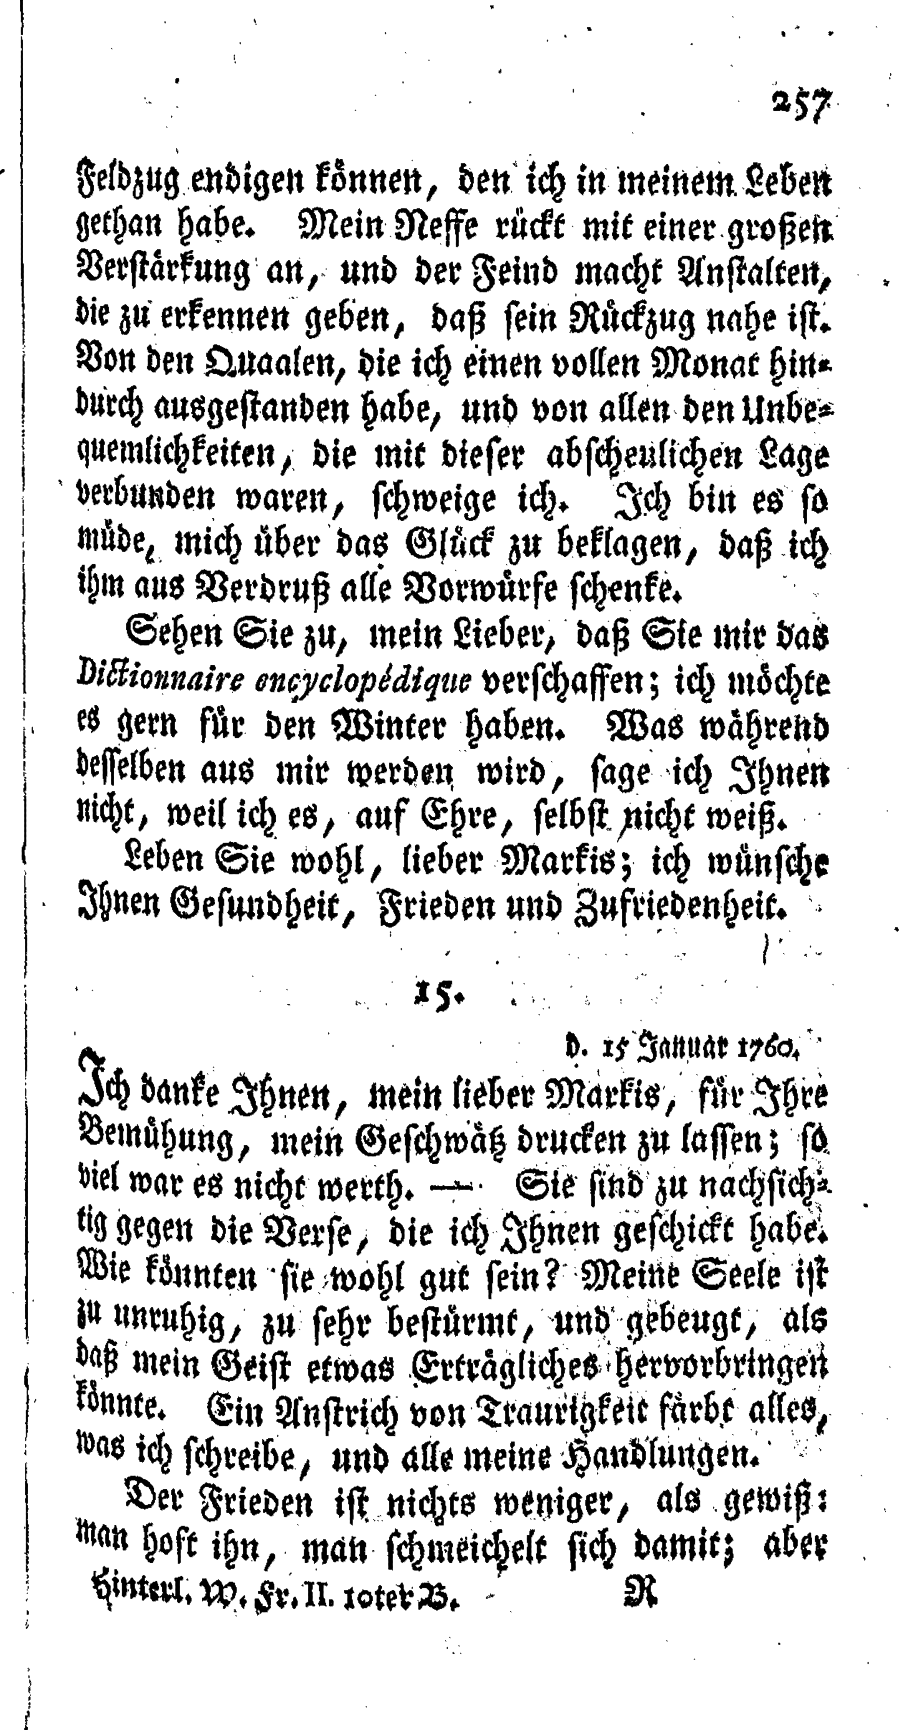 S. 257, Obj. 2